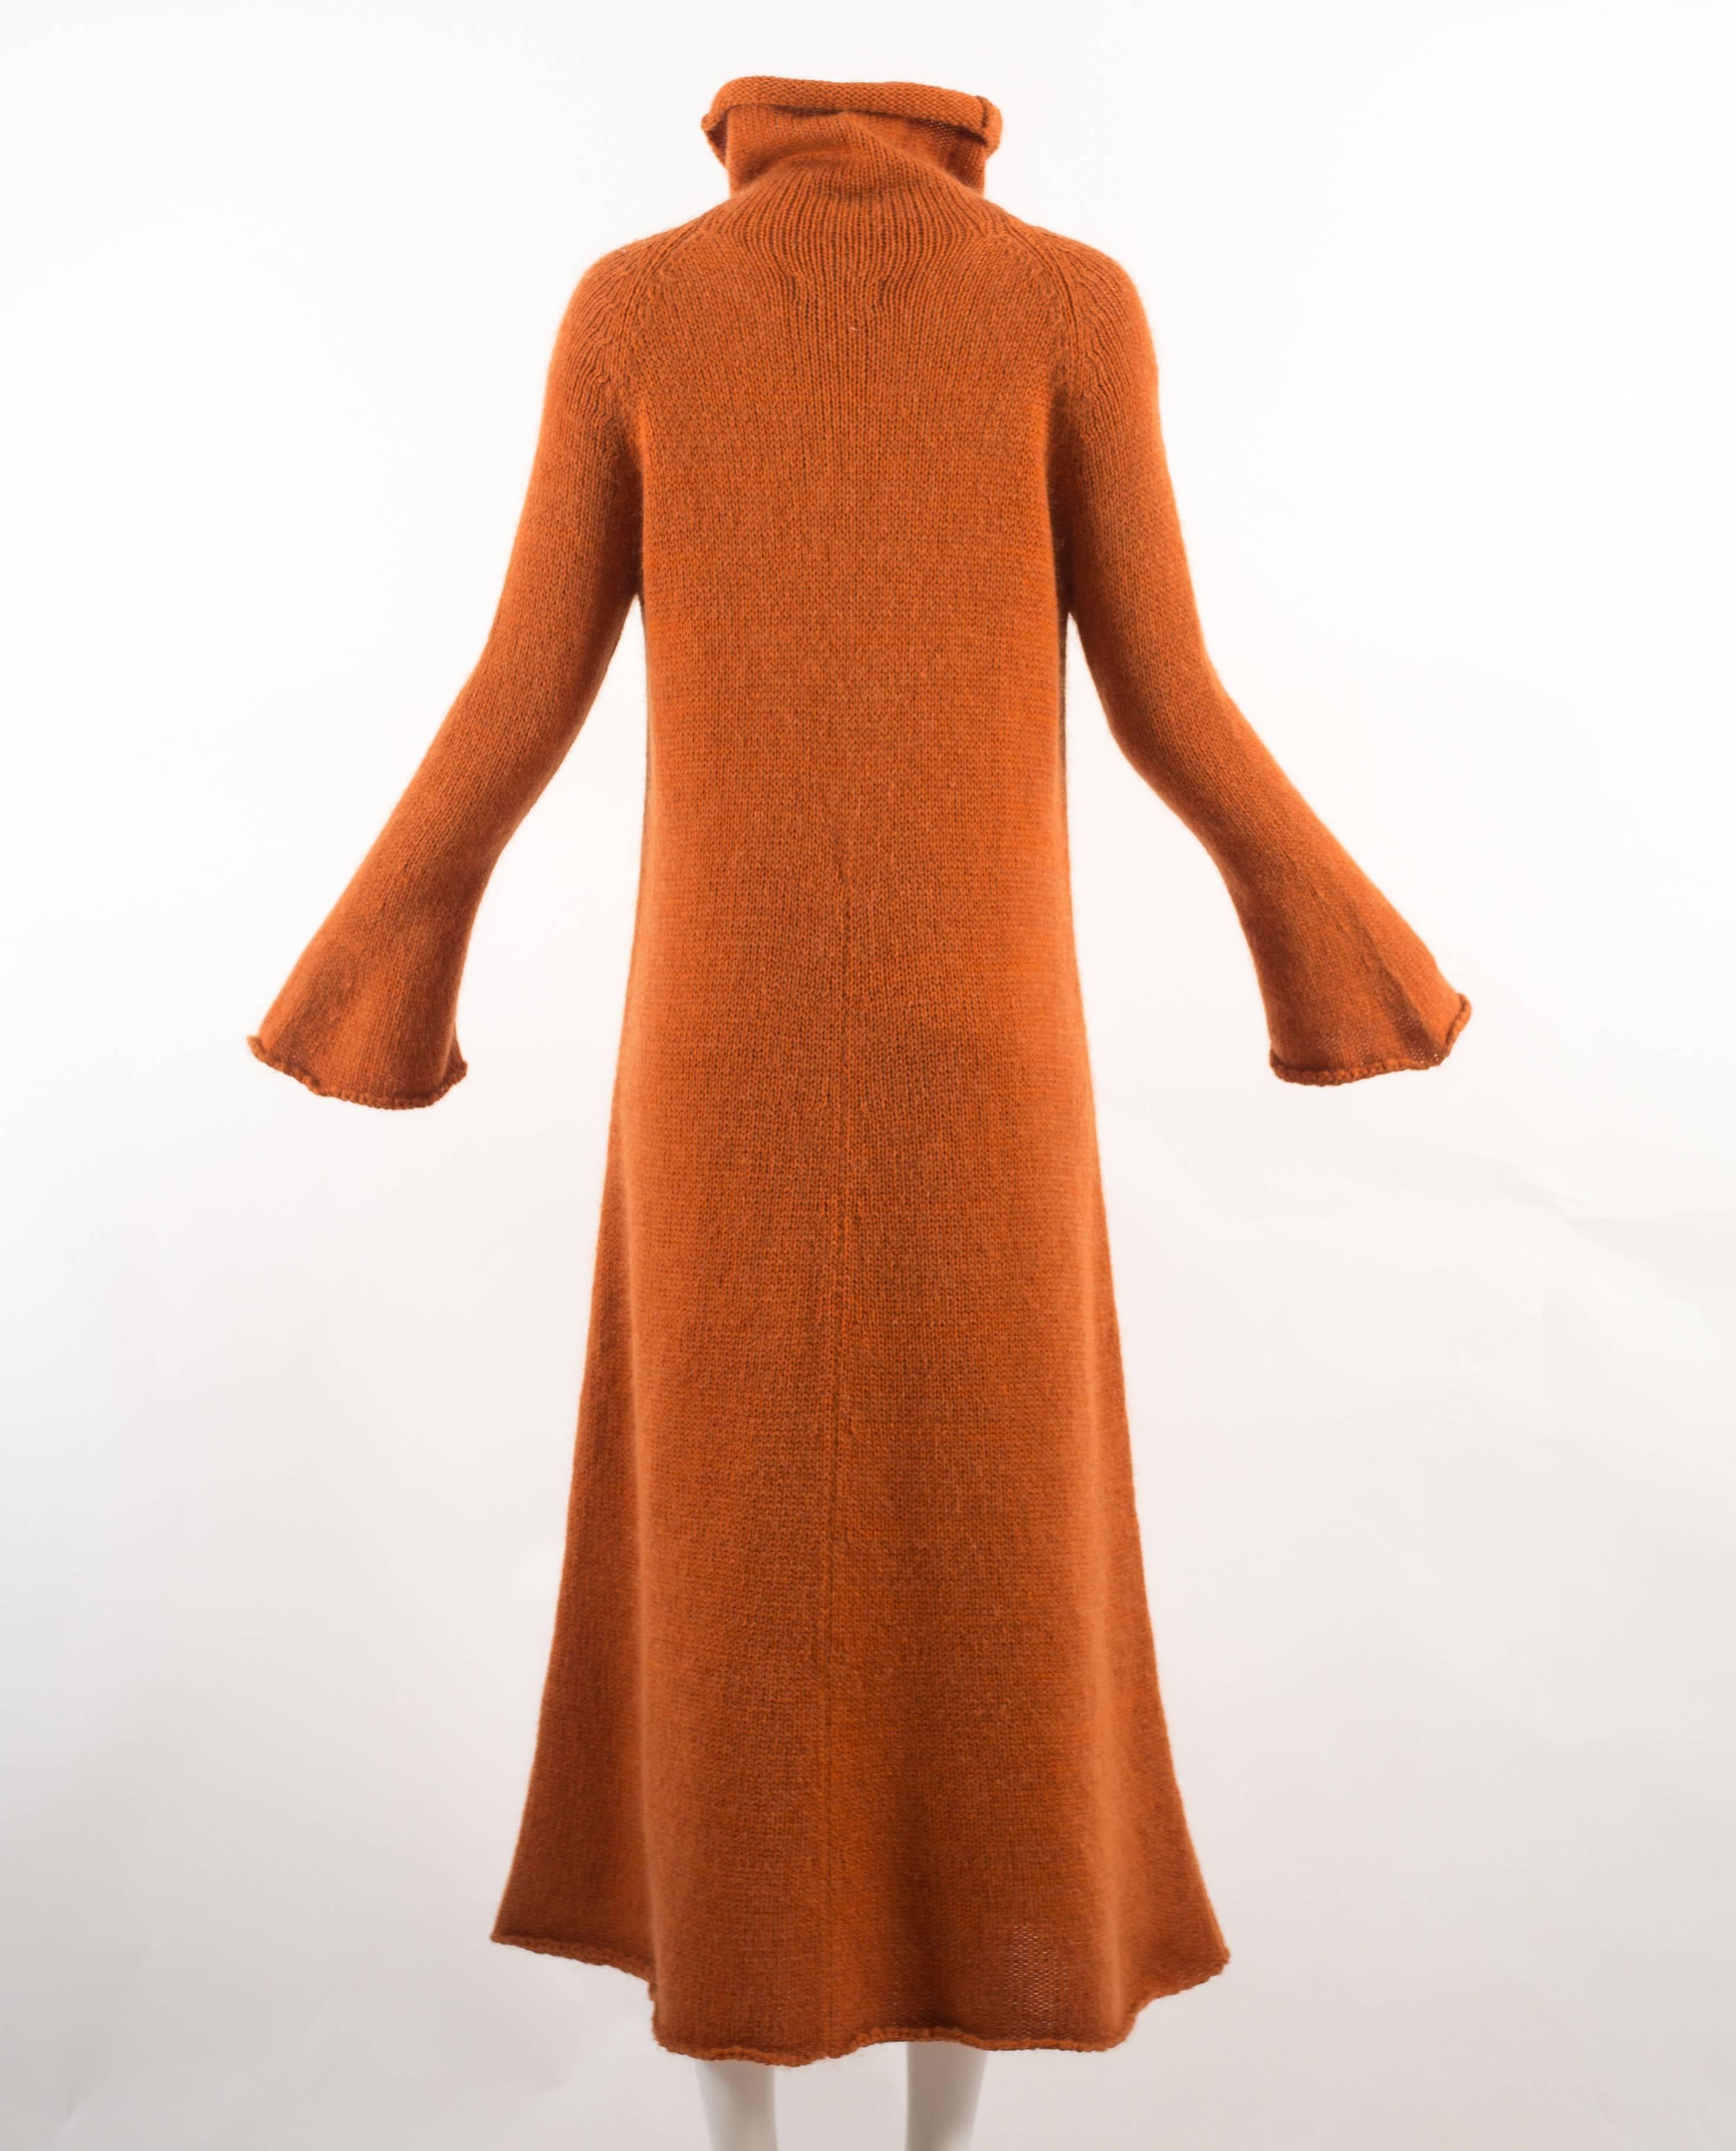 Yohji Yamamoto Autumn-Winter 1998 orange knitted maxi dress 2